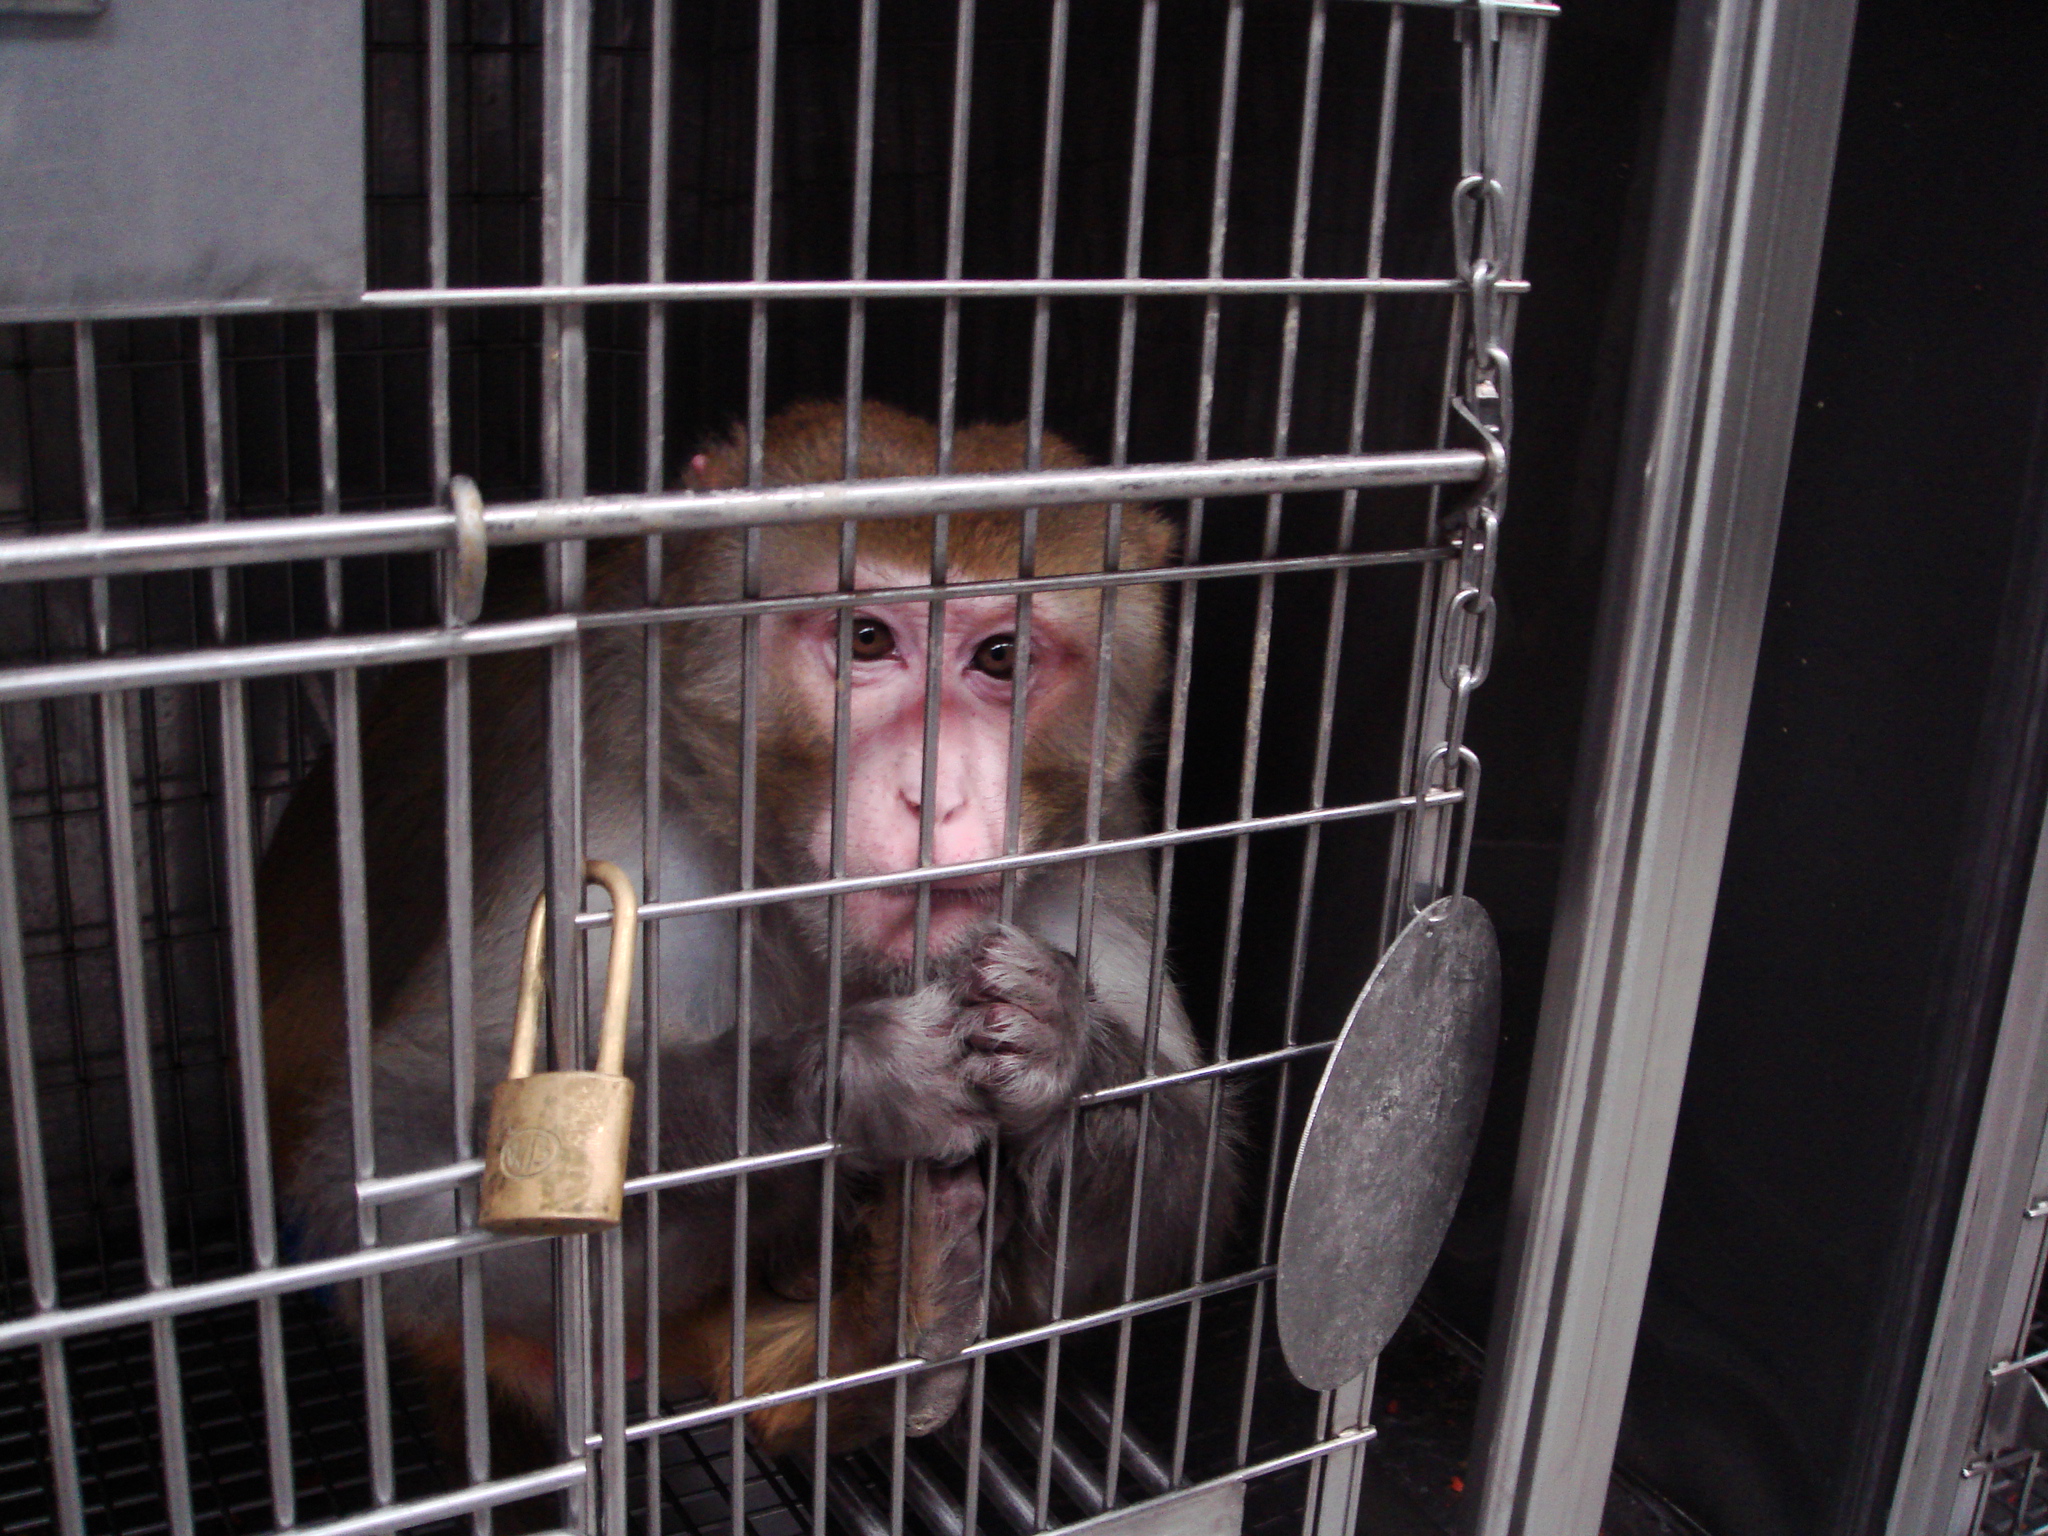 Air France Transporta a Monos Maltratados a Laboratorios | Blog | PETA Latino